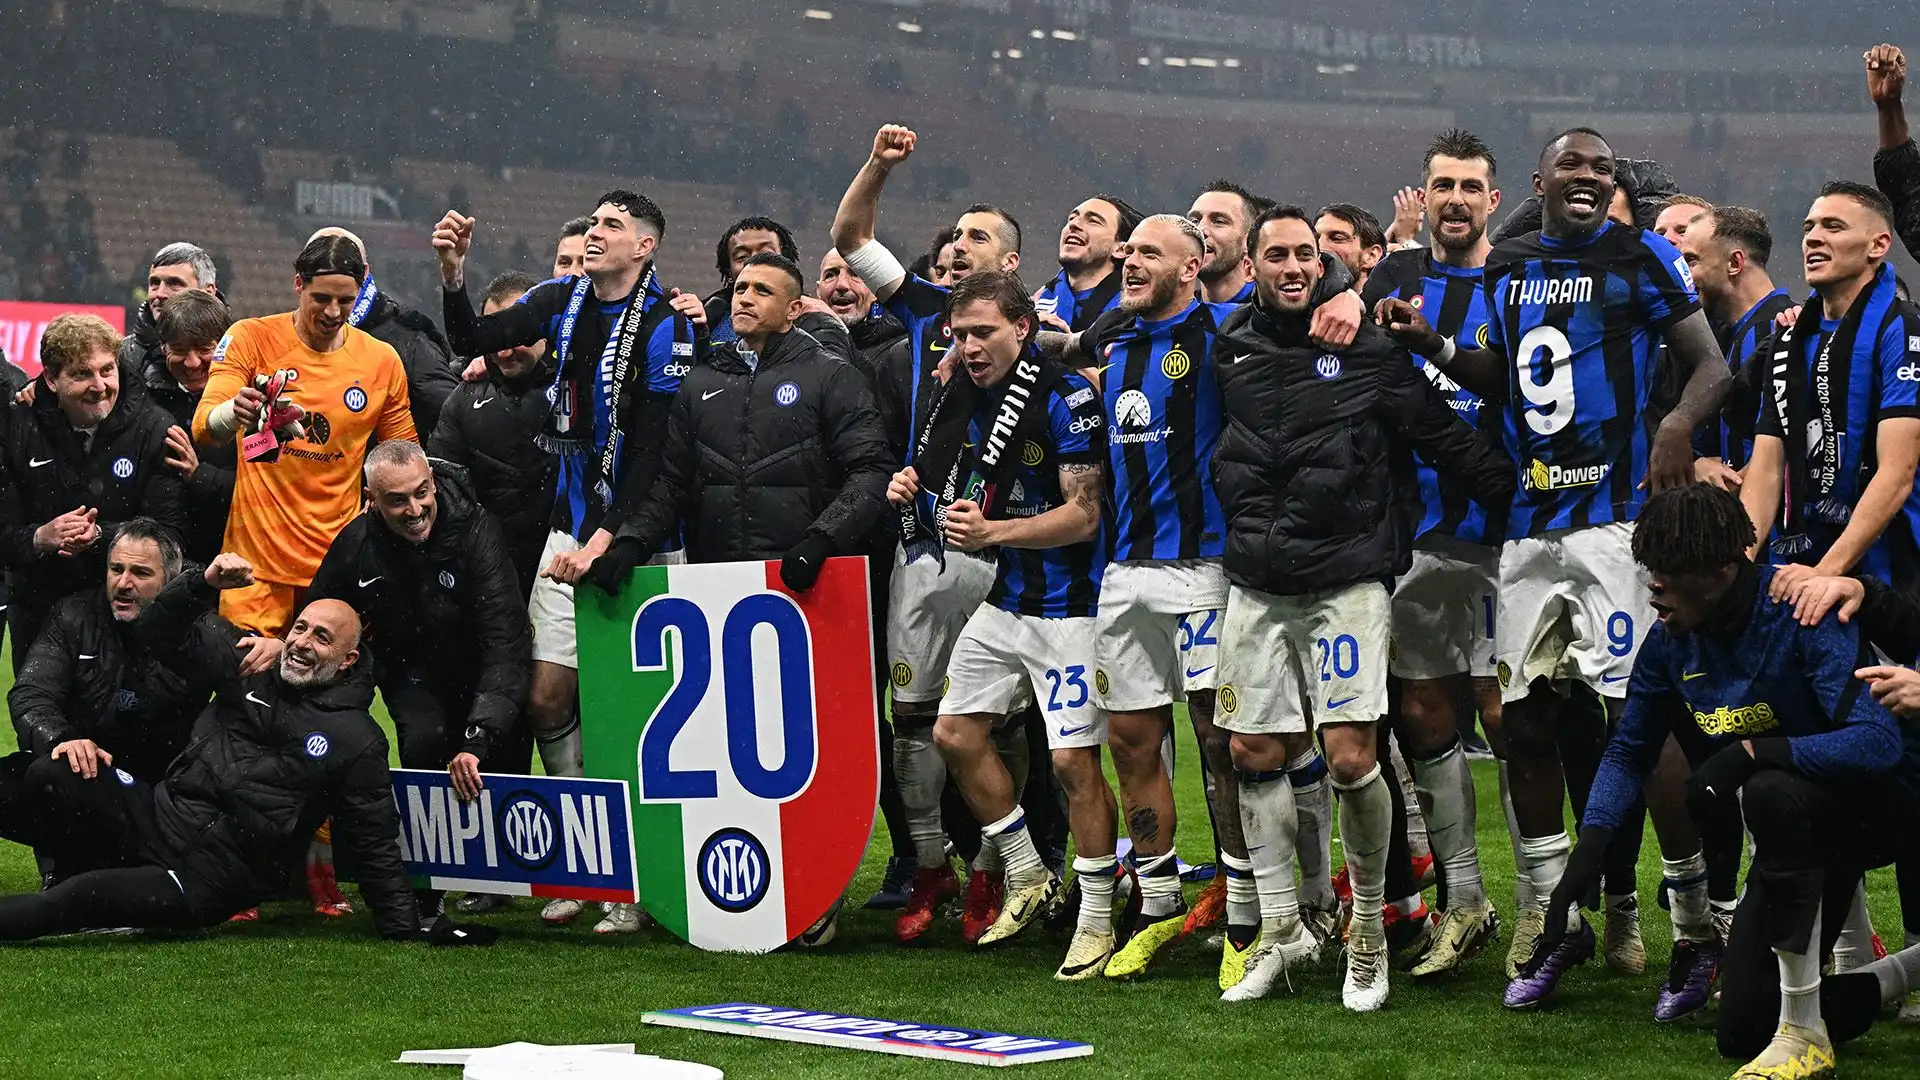 L'Inter ha vinto lo scudetto con cinque giornate di anticipo sulla fine del campionato